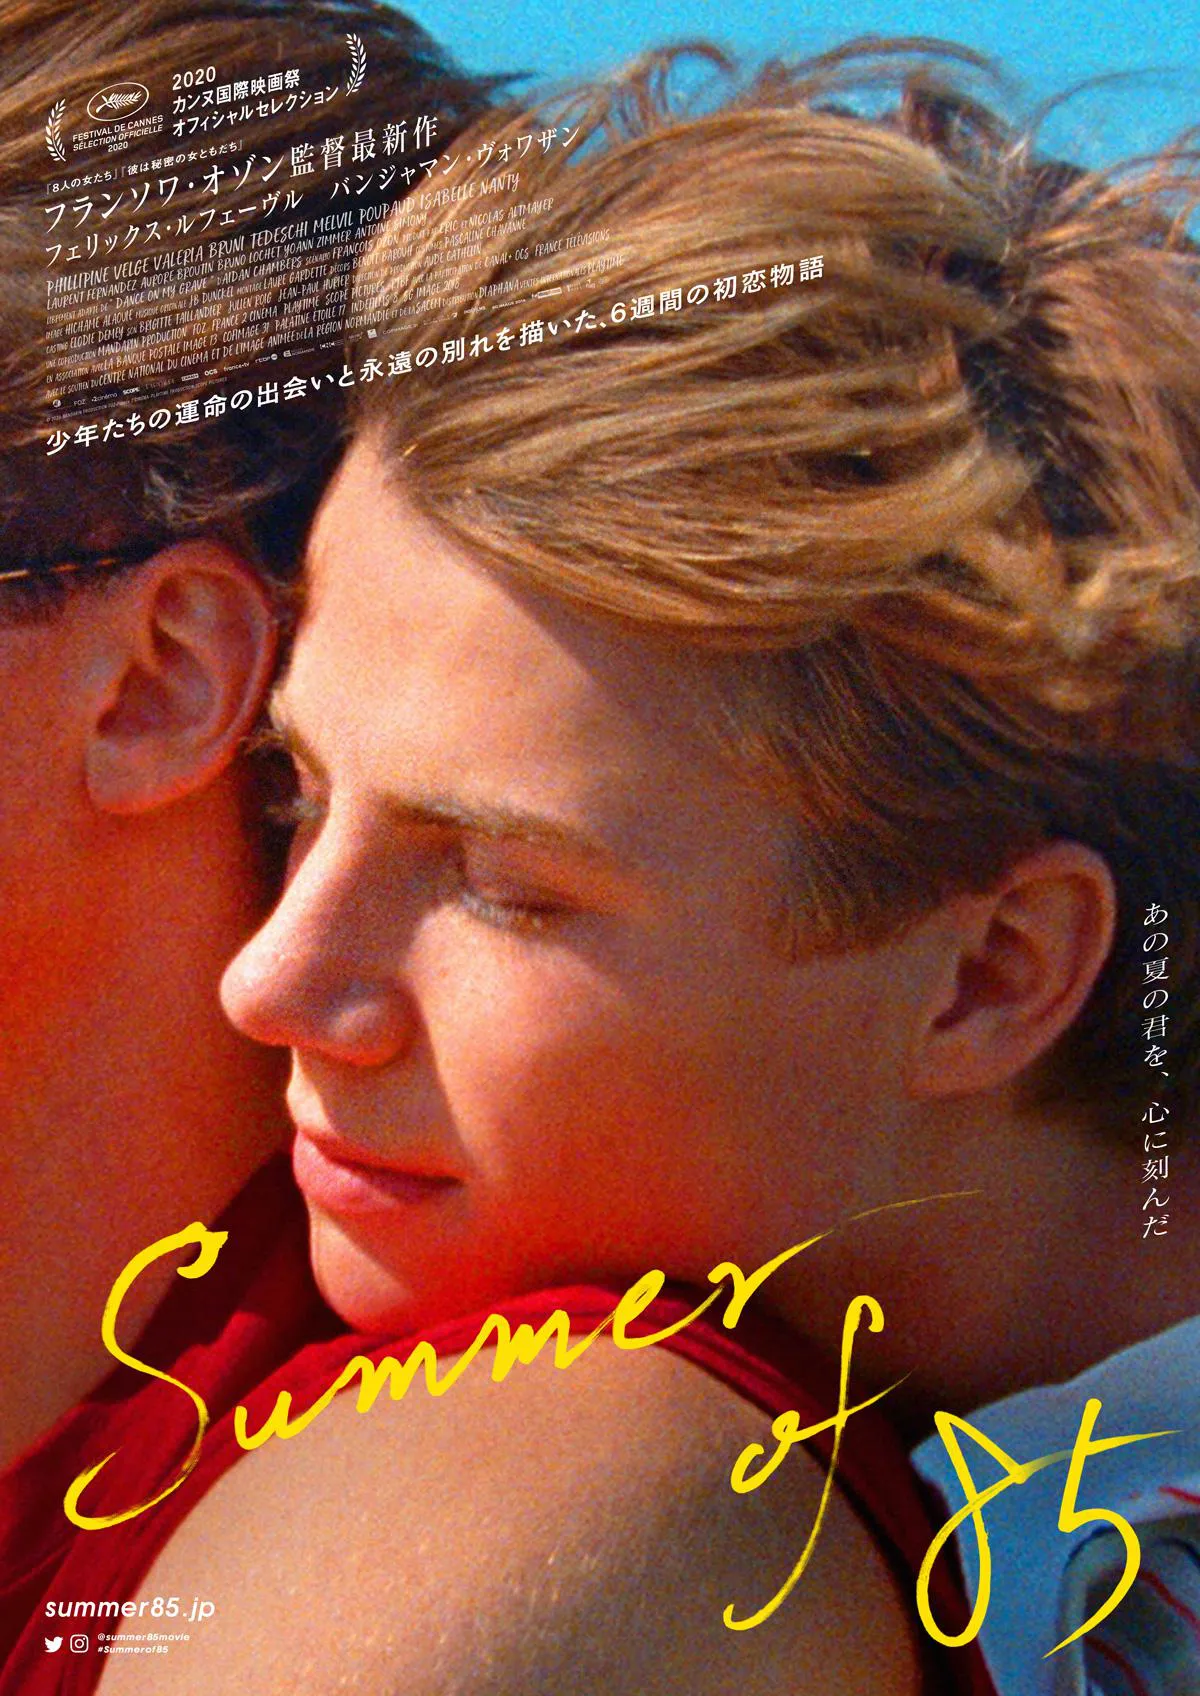 映画「Summer of 85」は8月20日(金)に公開